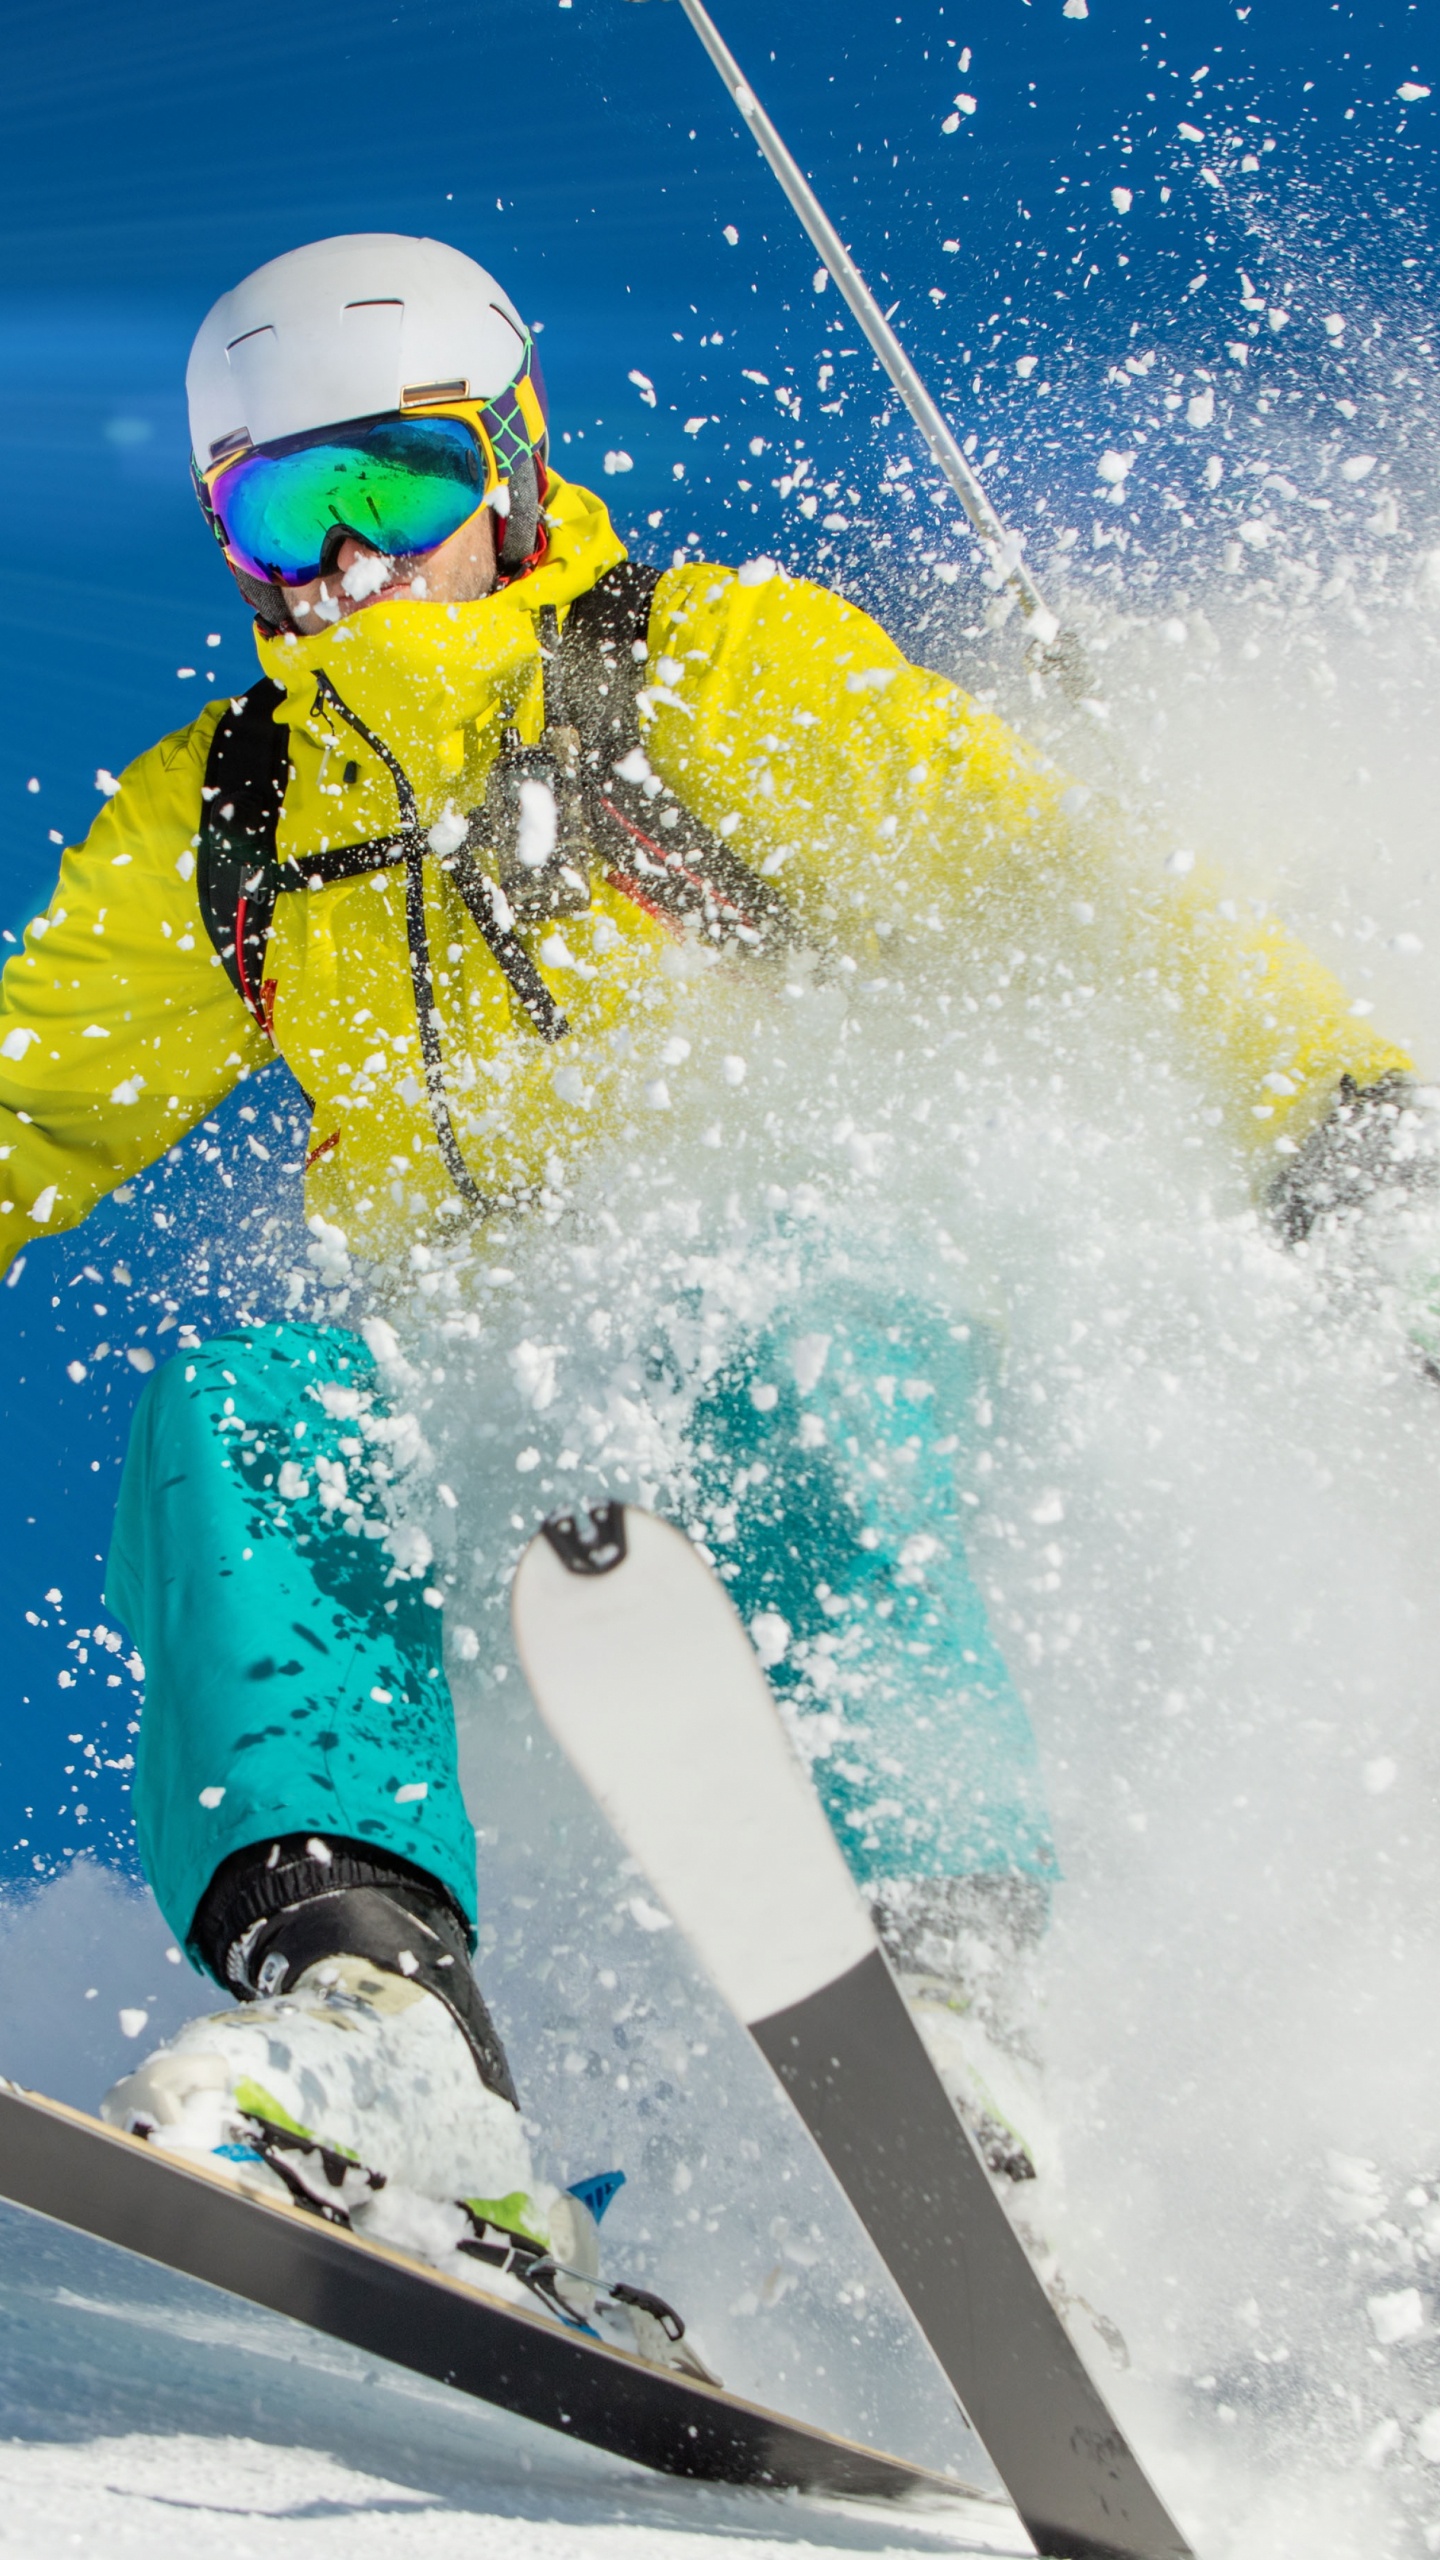 Persona Con Chaqueta Amarilla y Casco Rojo Montando en Snowboard Blanco y Rojo Durante el Día. Wallpaper in 1440x2560 Resolution